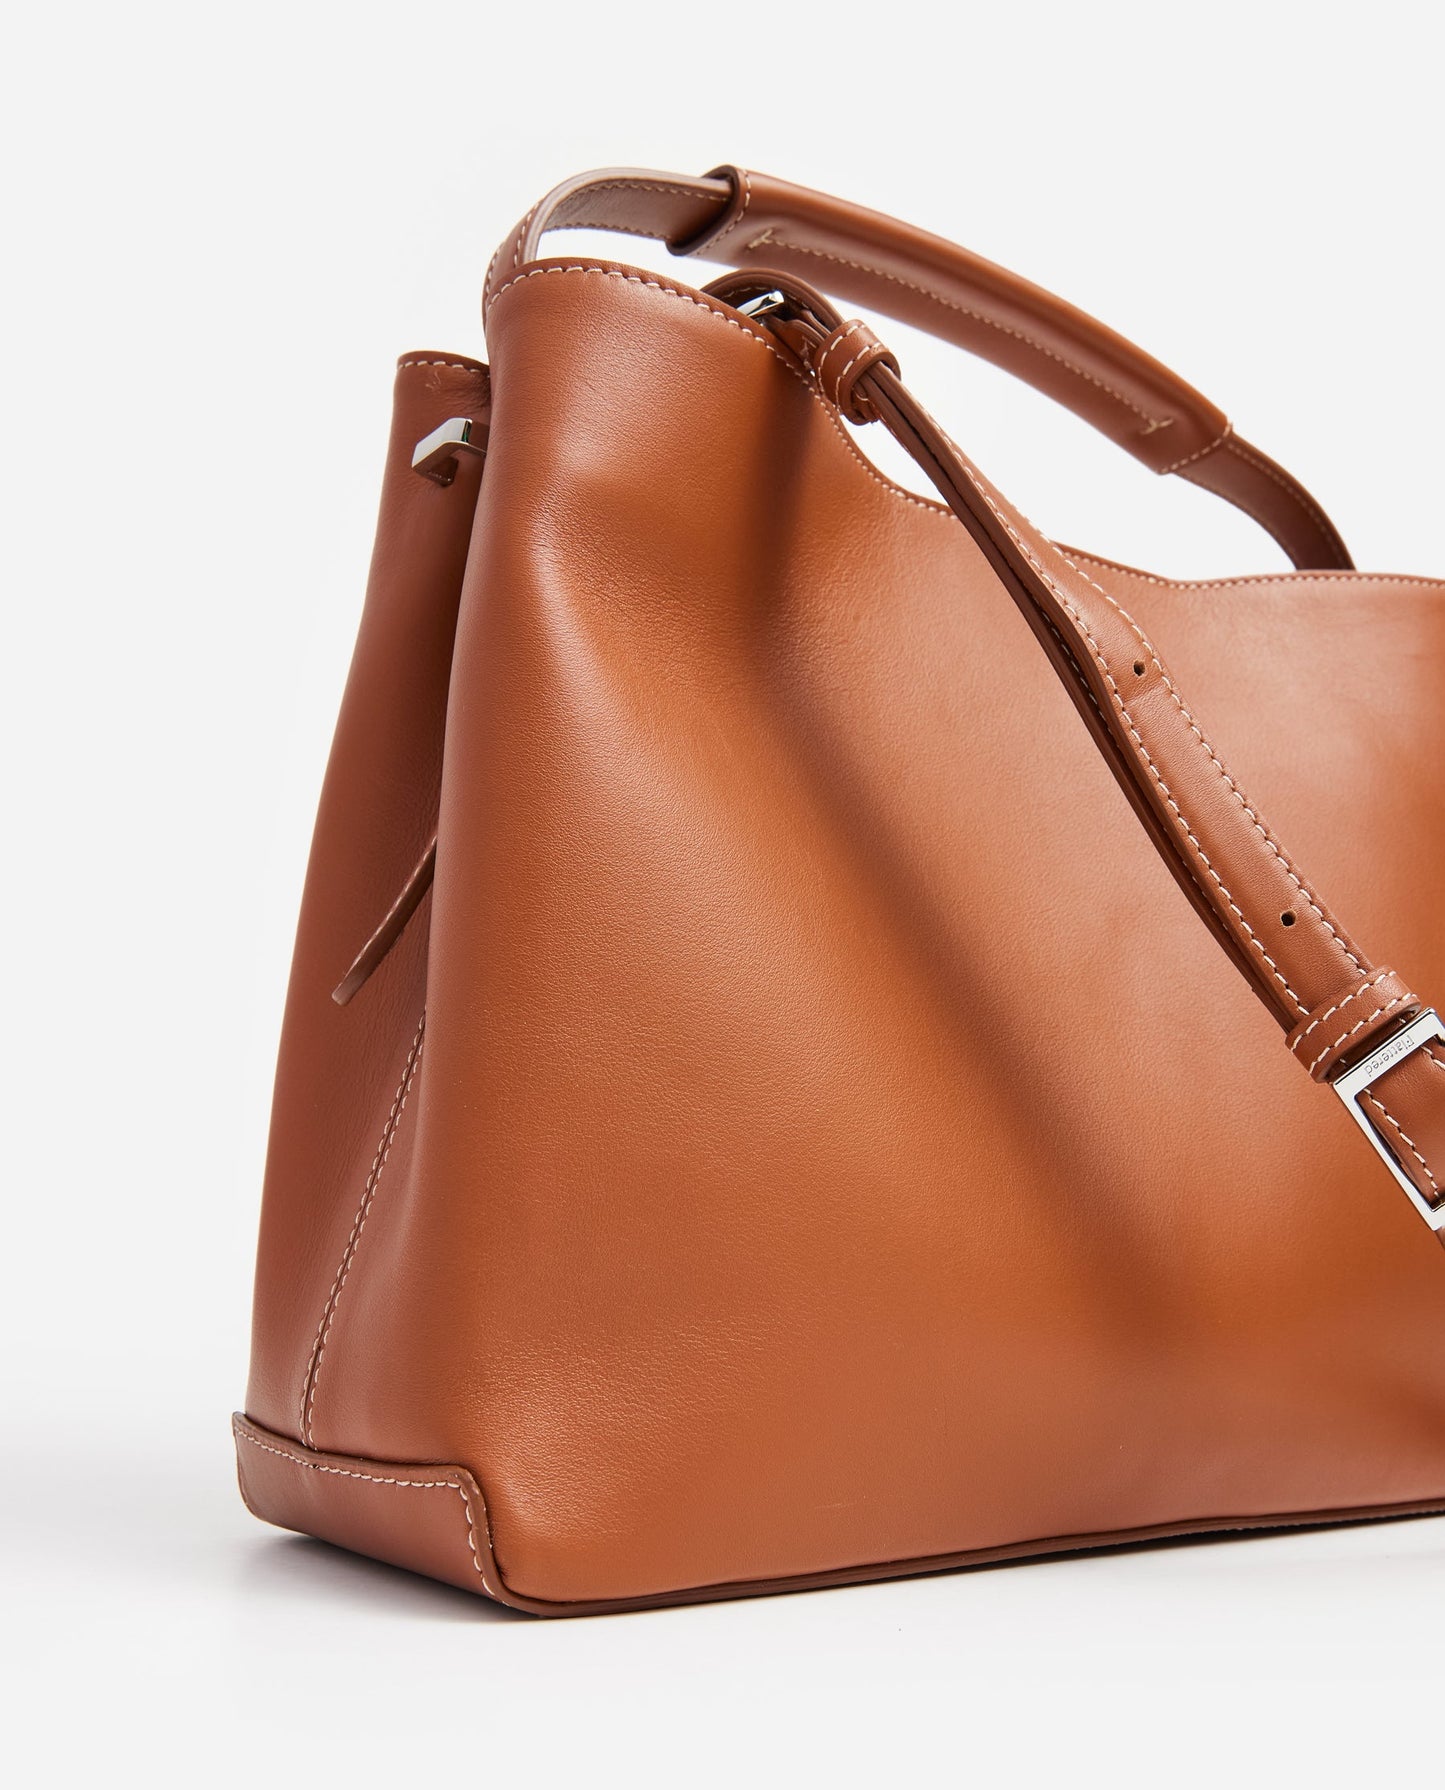 Harper Grande Handbag Leather Cognac